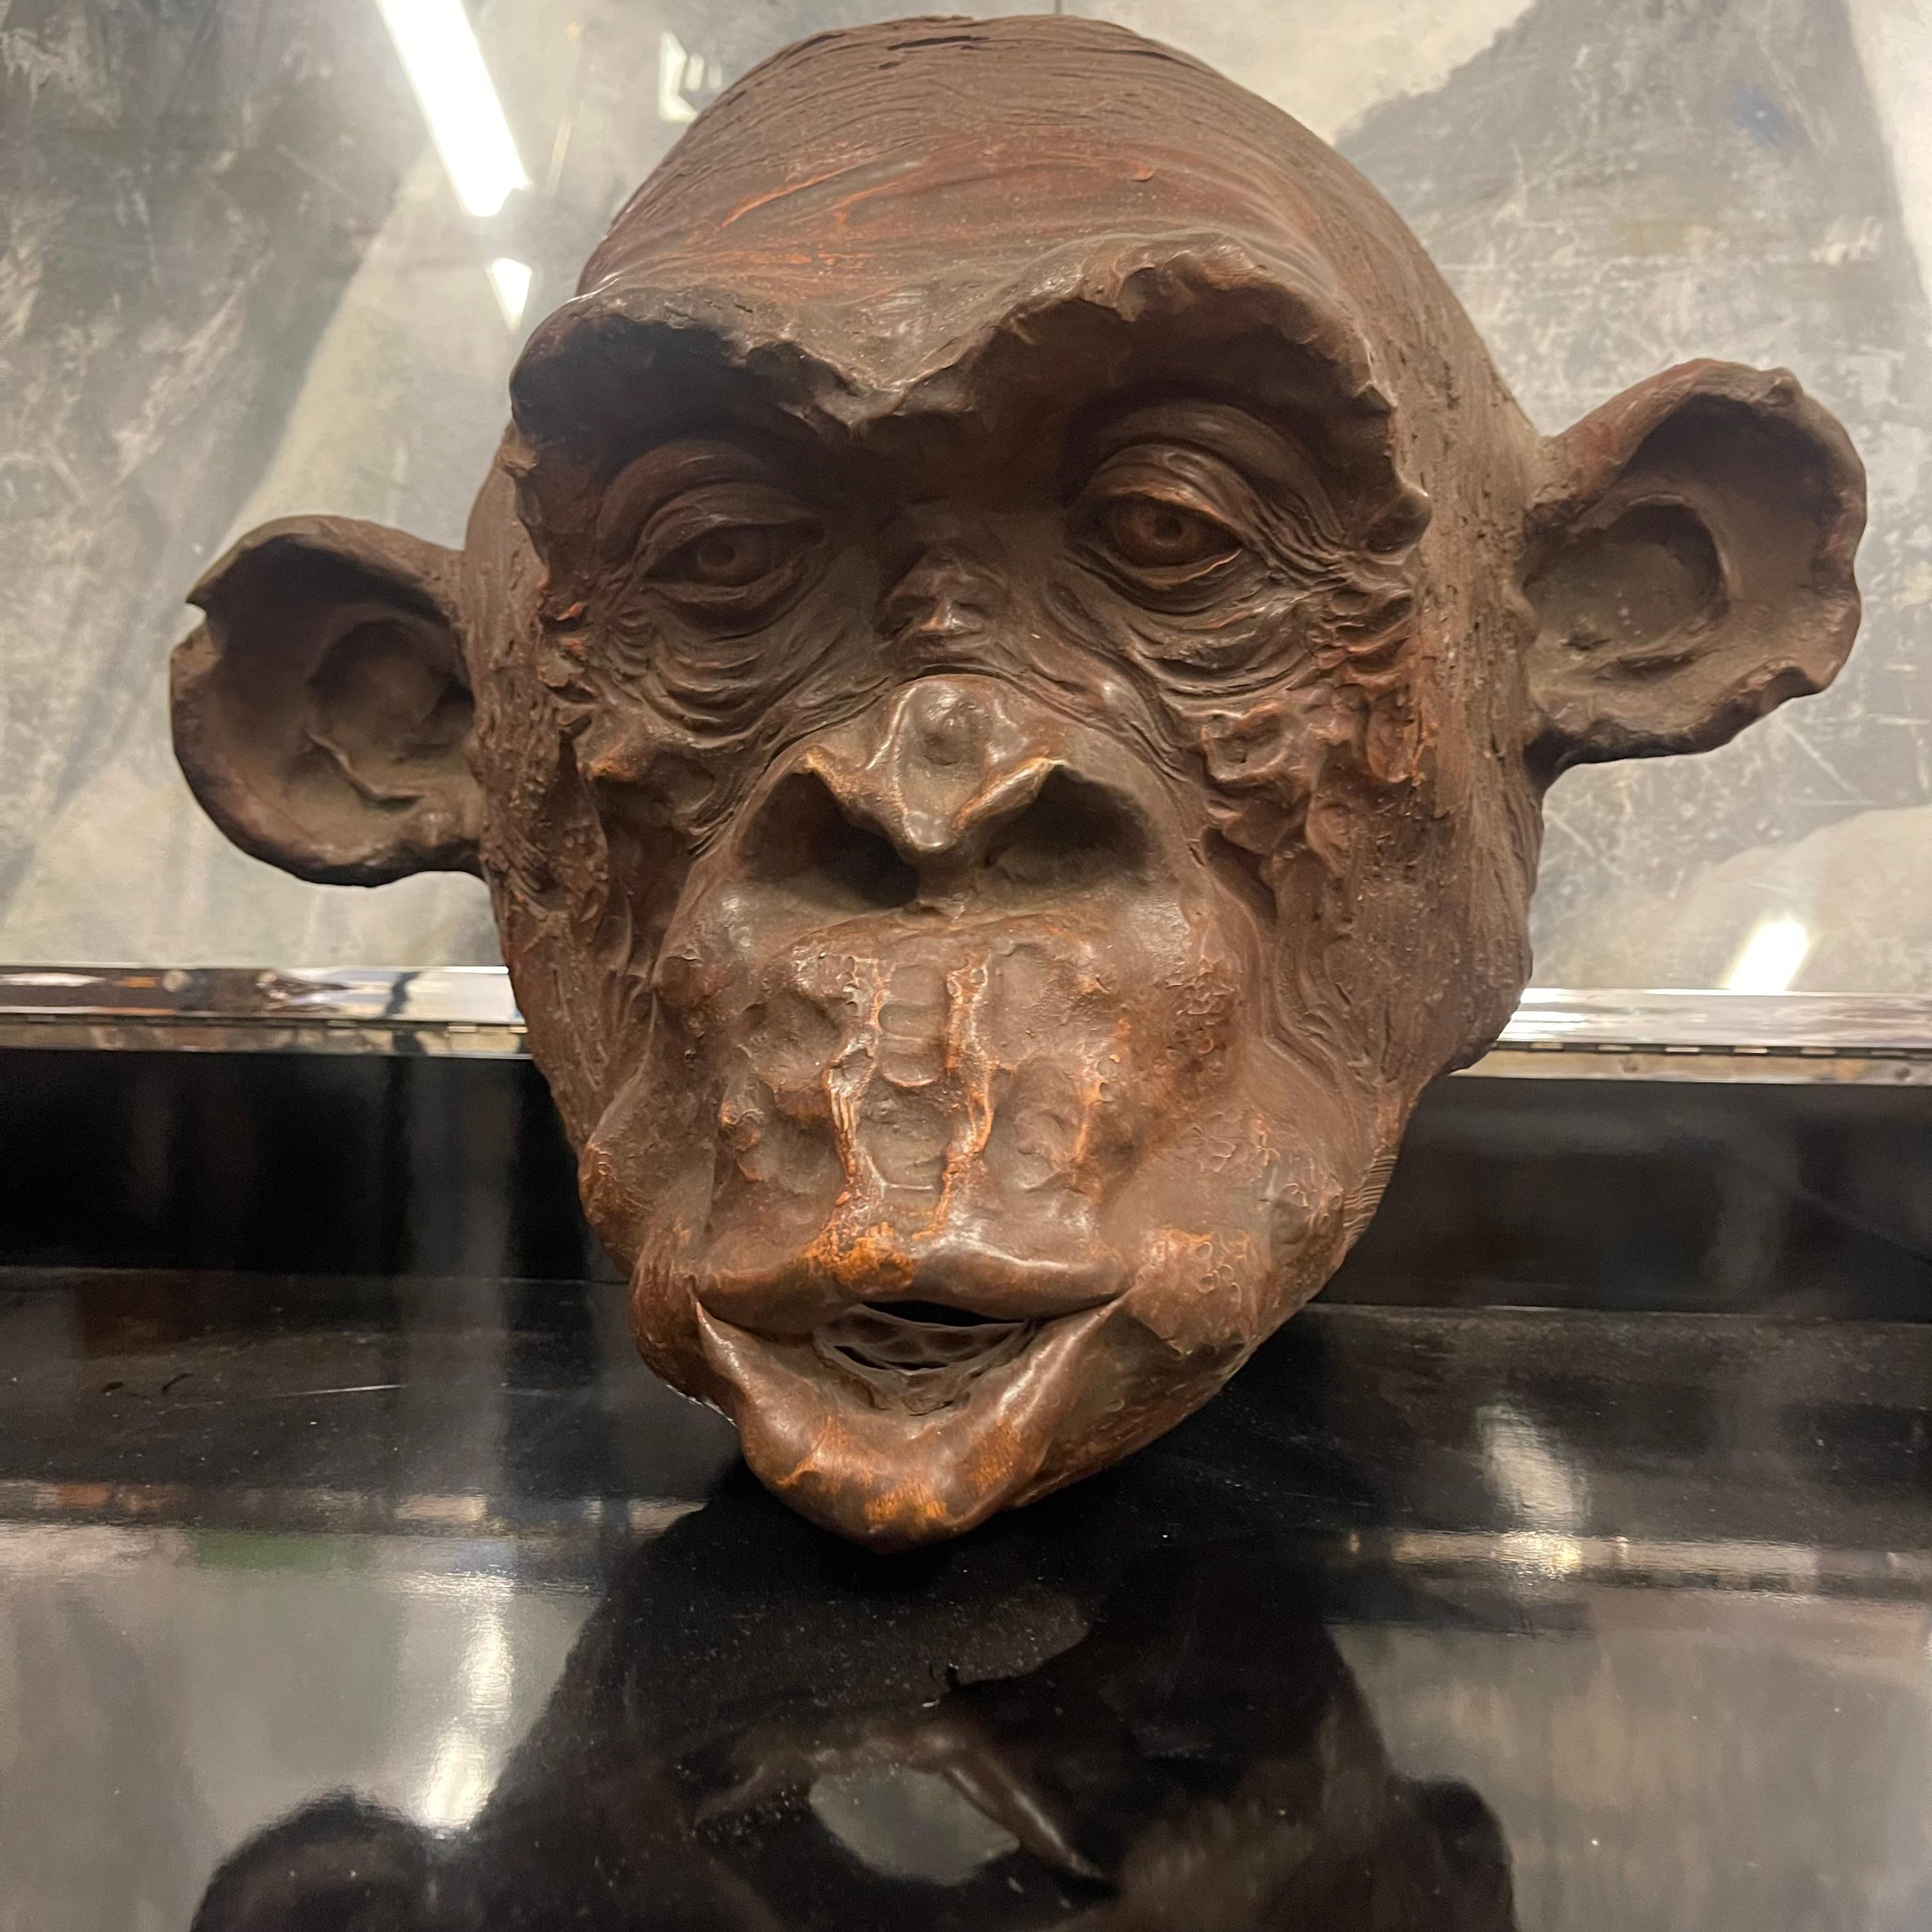 Modern Scultura di Testa di Scimmia Bonobo in Terracotta firmata e Datata - Italia 2018